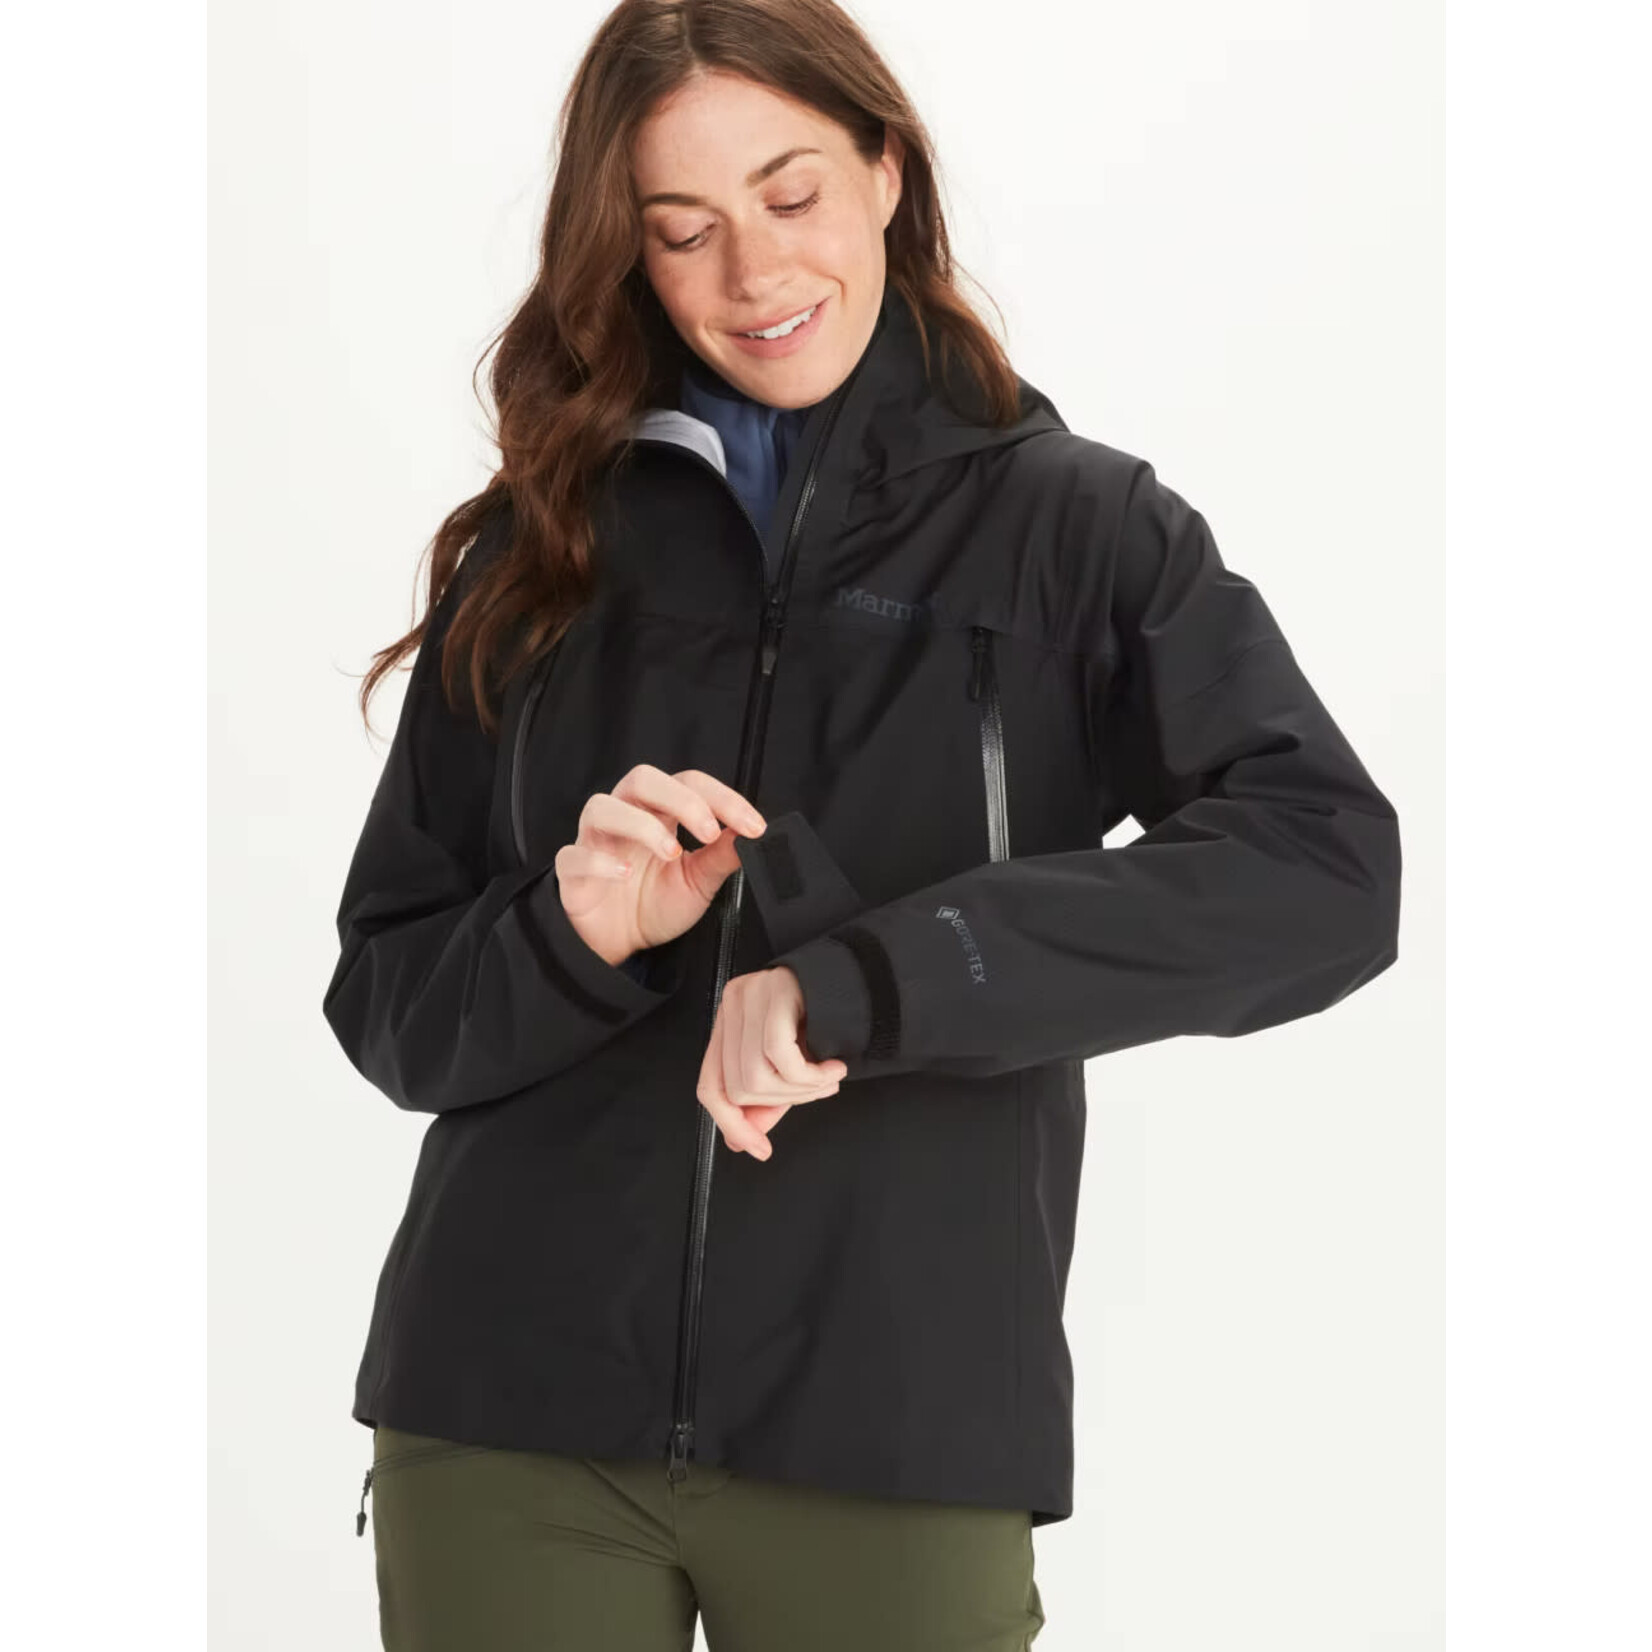 Marmot Wm's Mitre Peak Jacket (Manteau gore-tex pour femme)